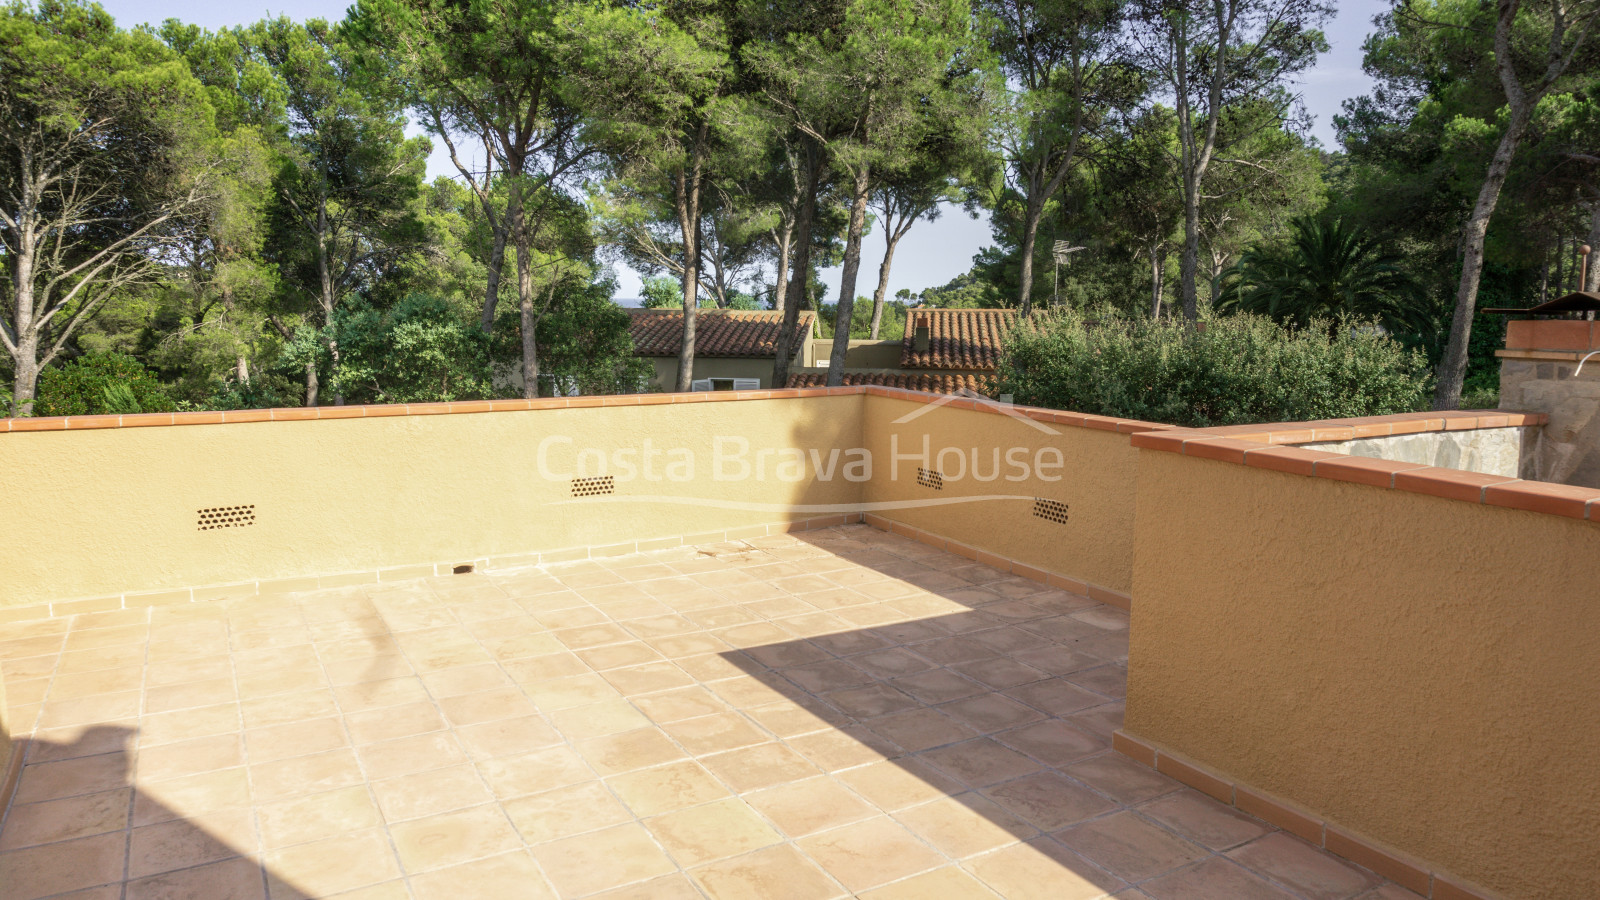 Casa amb piscina i jardí en venda a Tamariu, a només 1 km de la platja, en parcel·la de 1600 m².